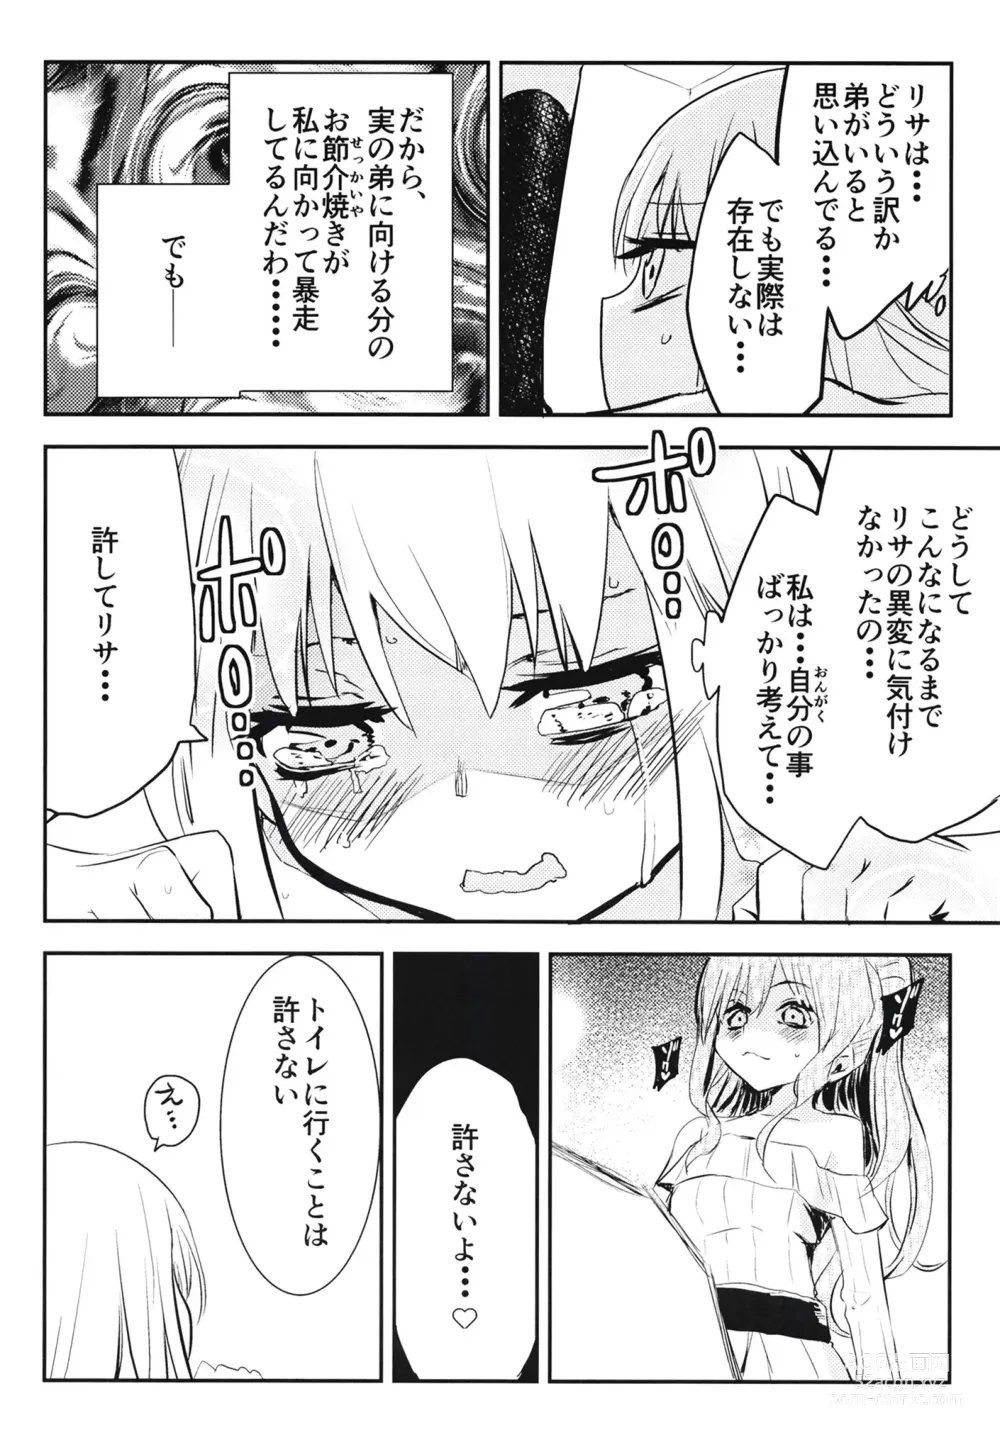 Page 16 of doujinshi Yukina Gakari